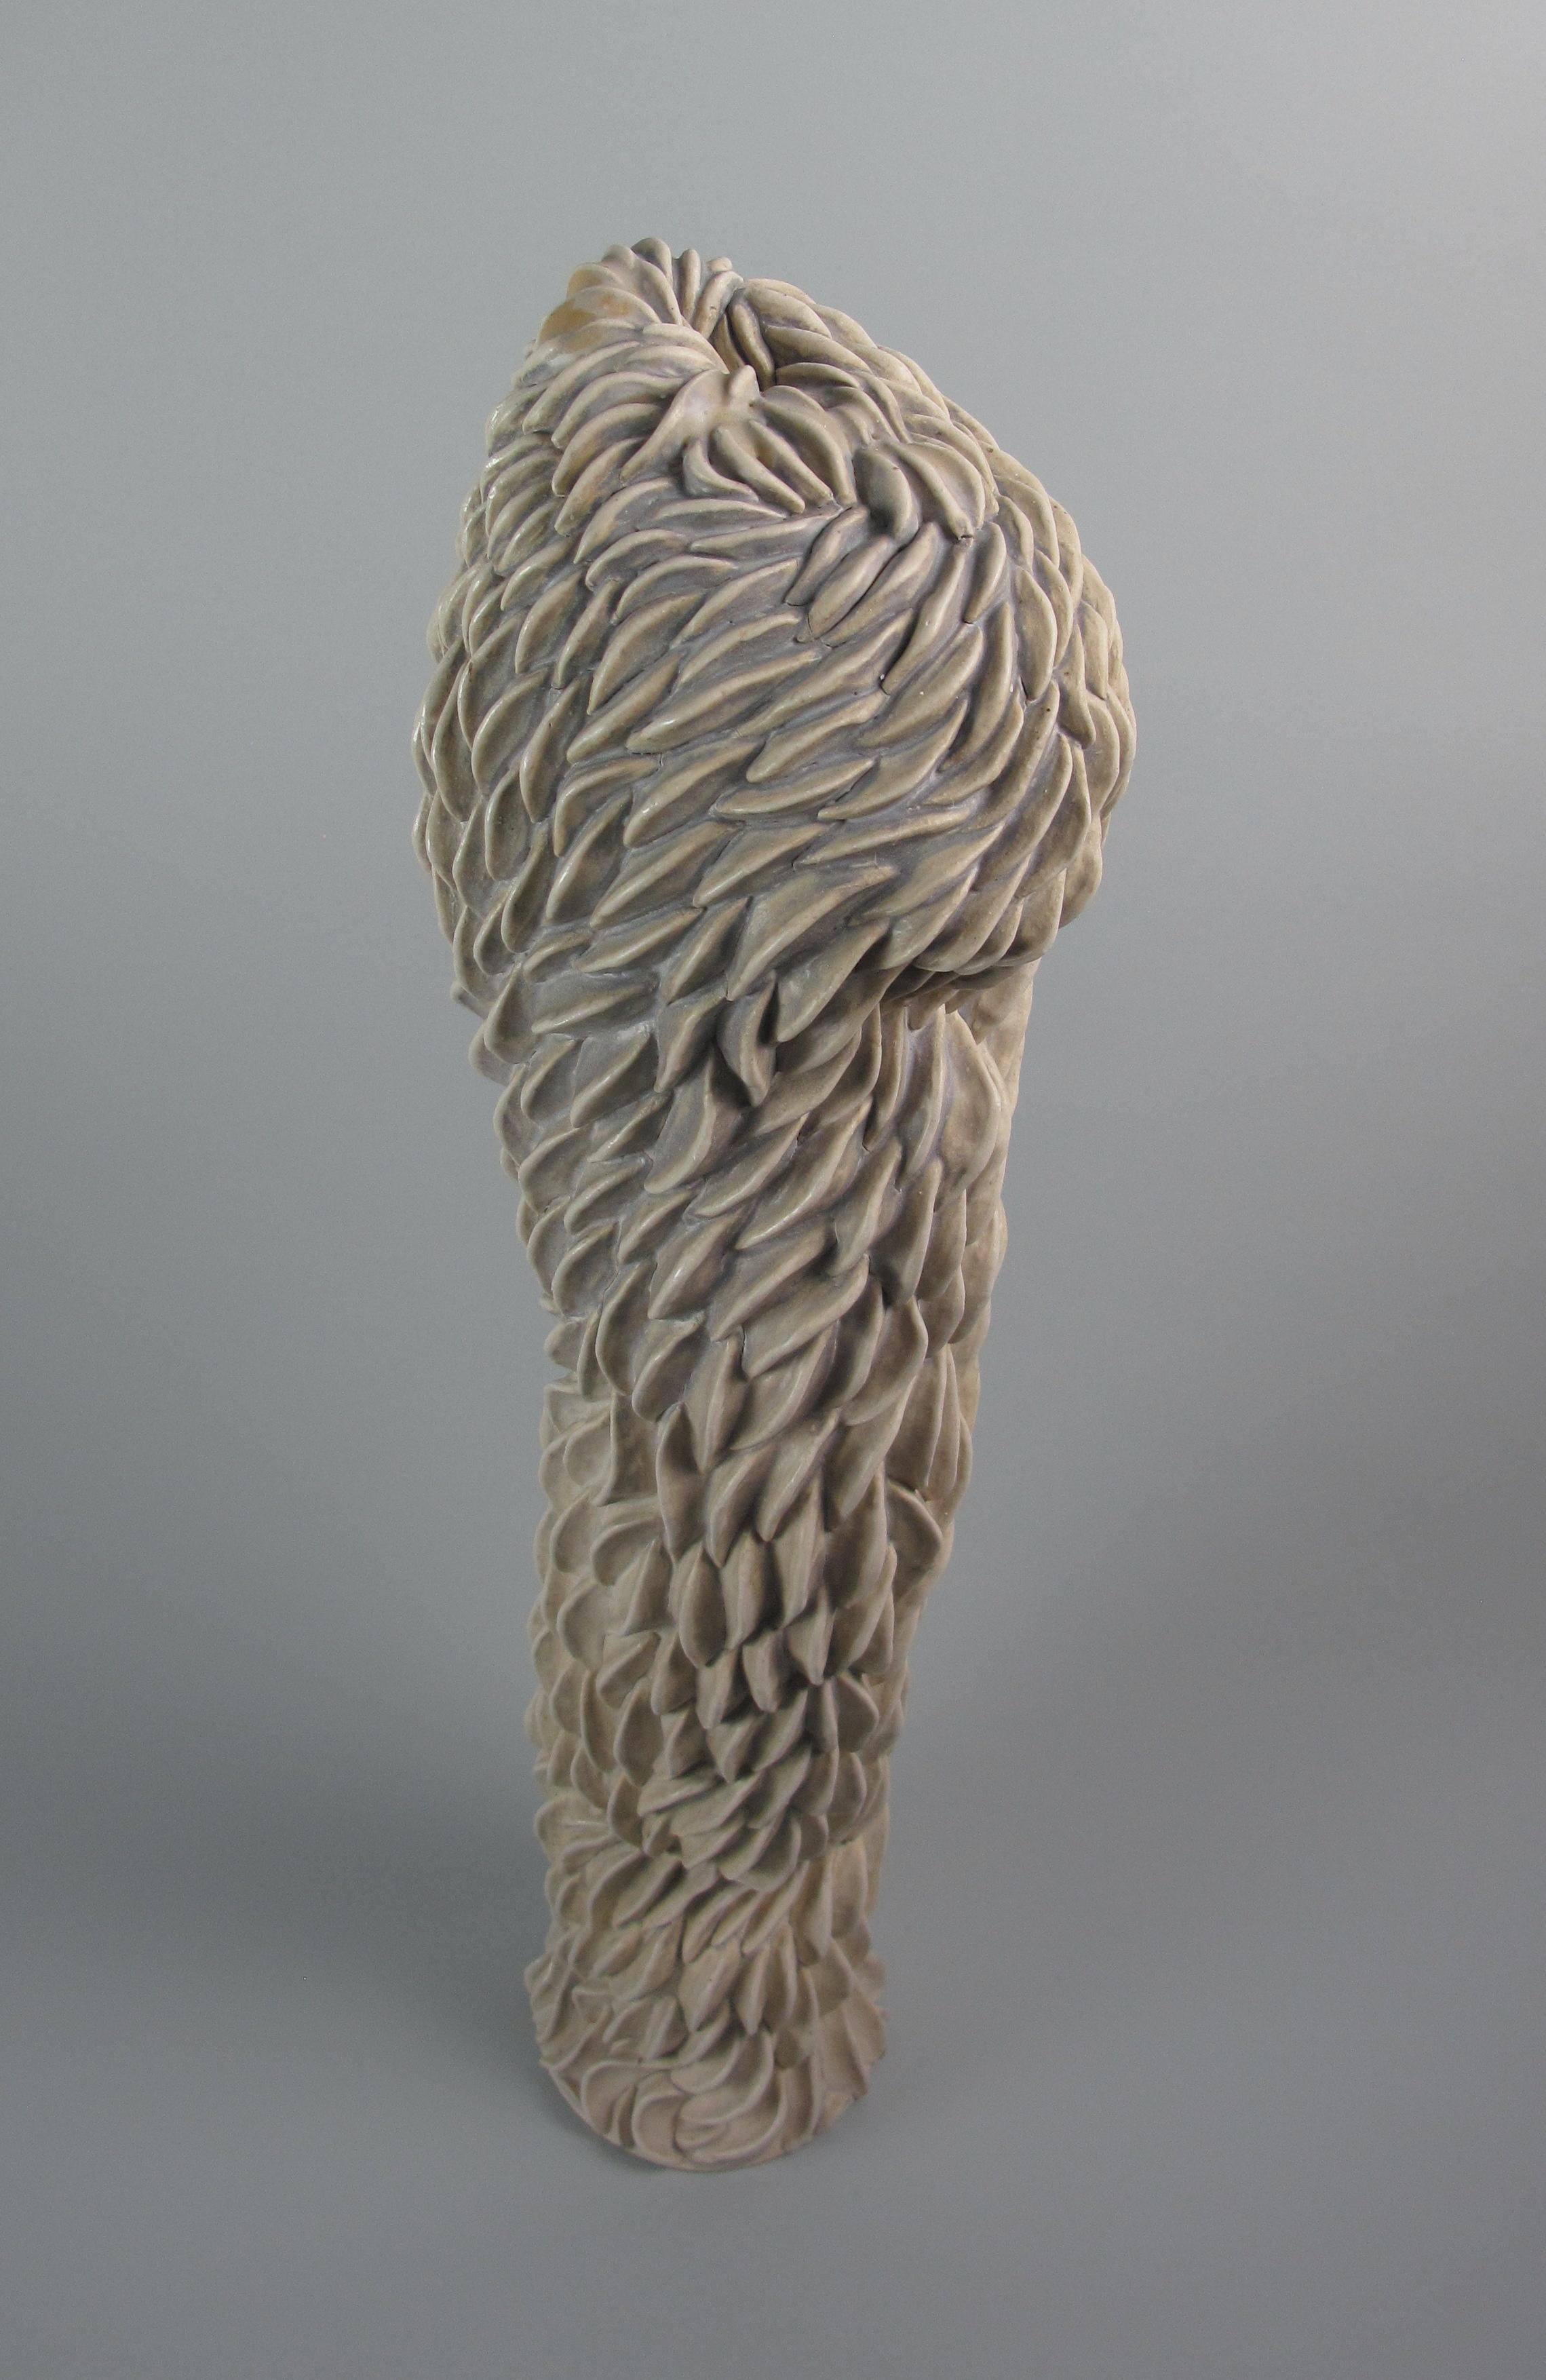 "Swarming Bulge", gestural, ceramic, sculpture, white, cream, grey, stoneware - Sculpture by Sara Fine-Wilson